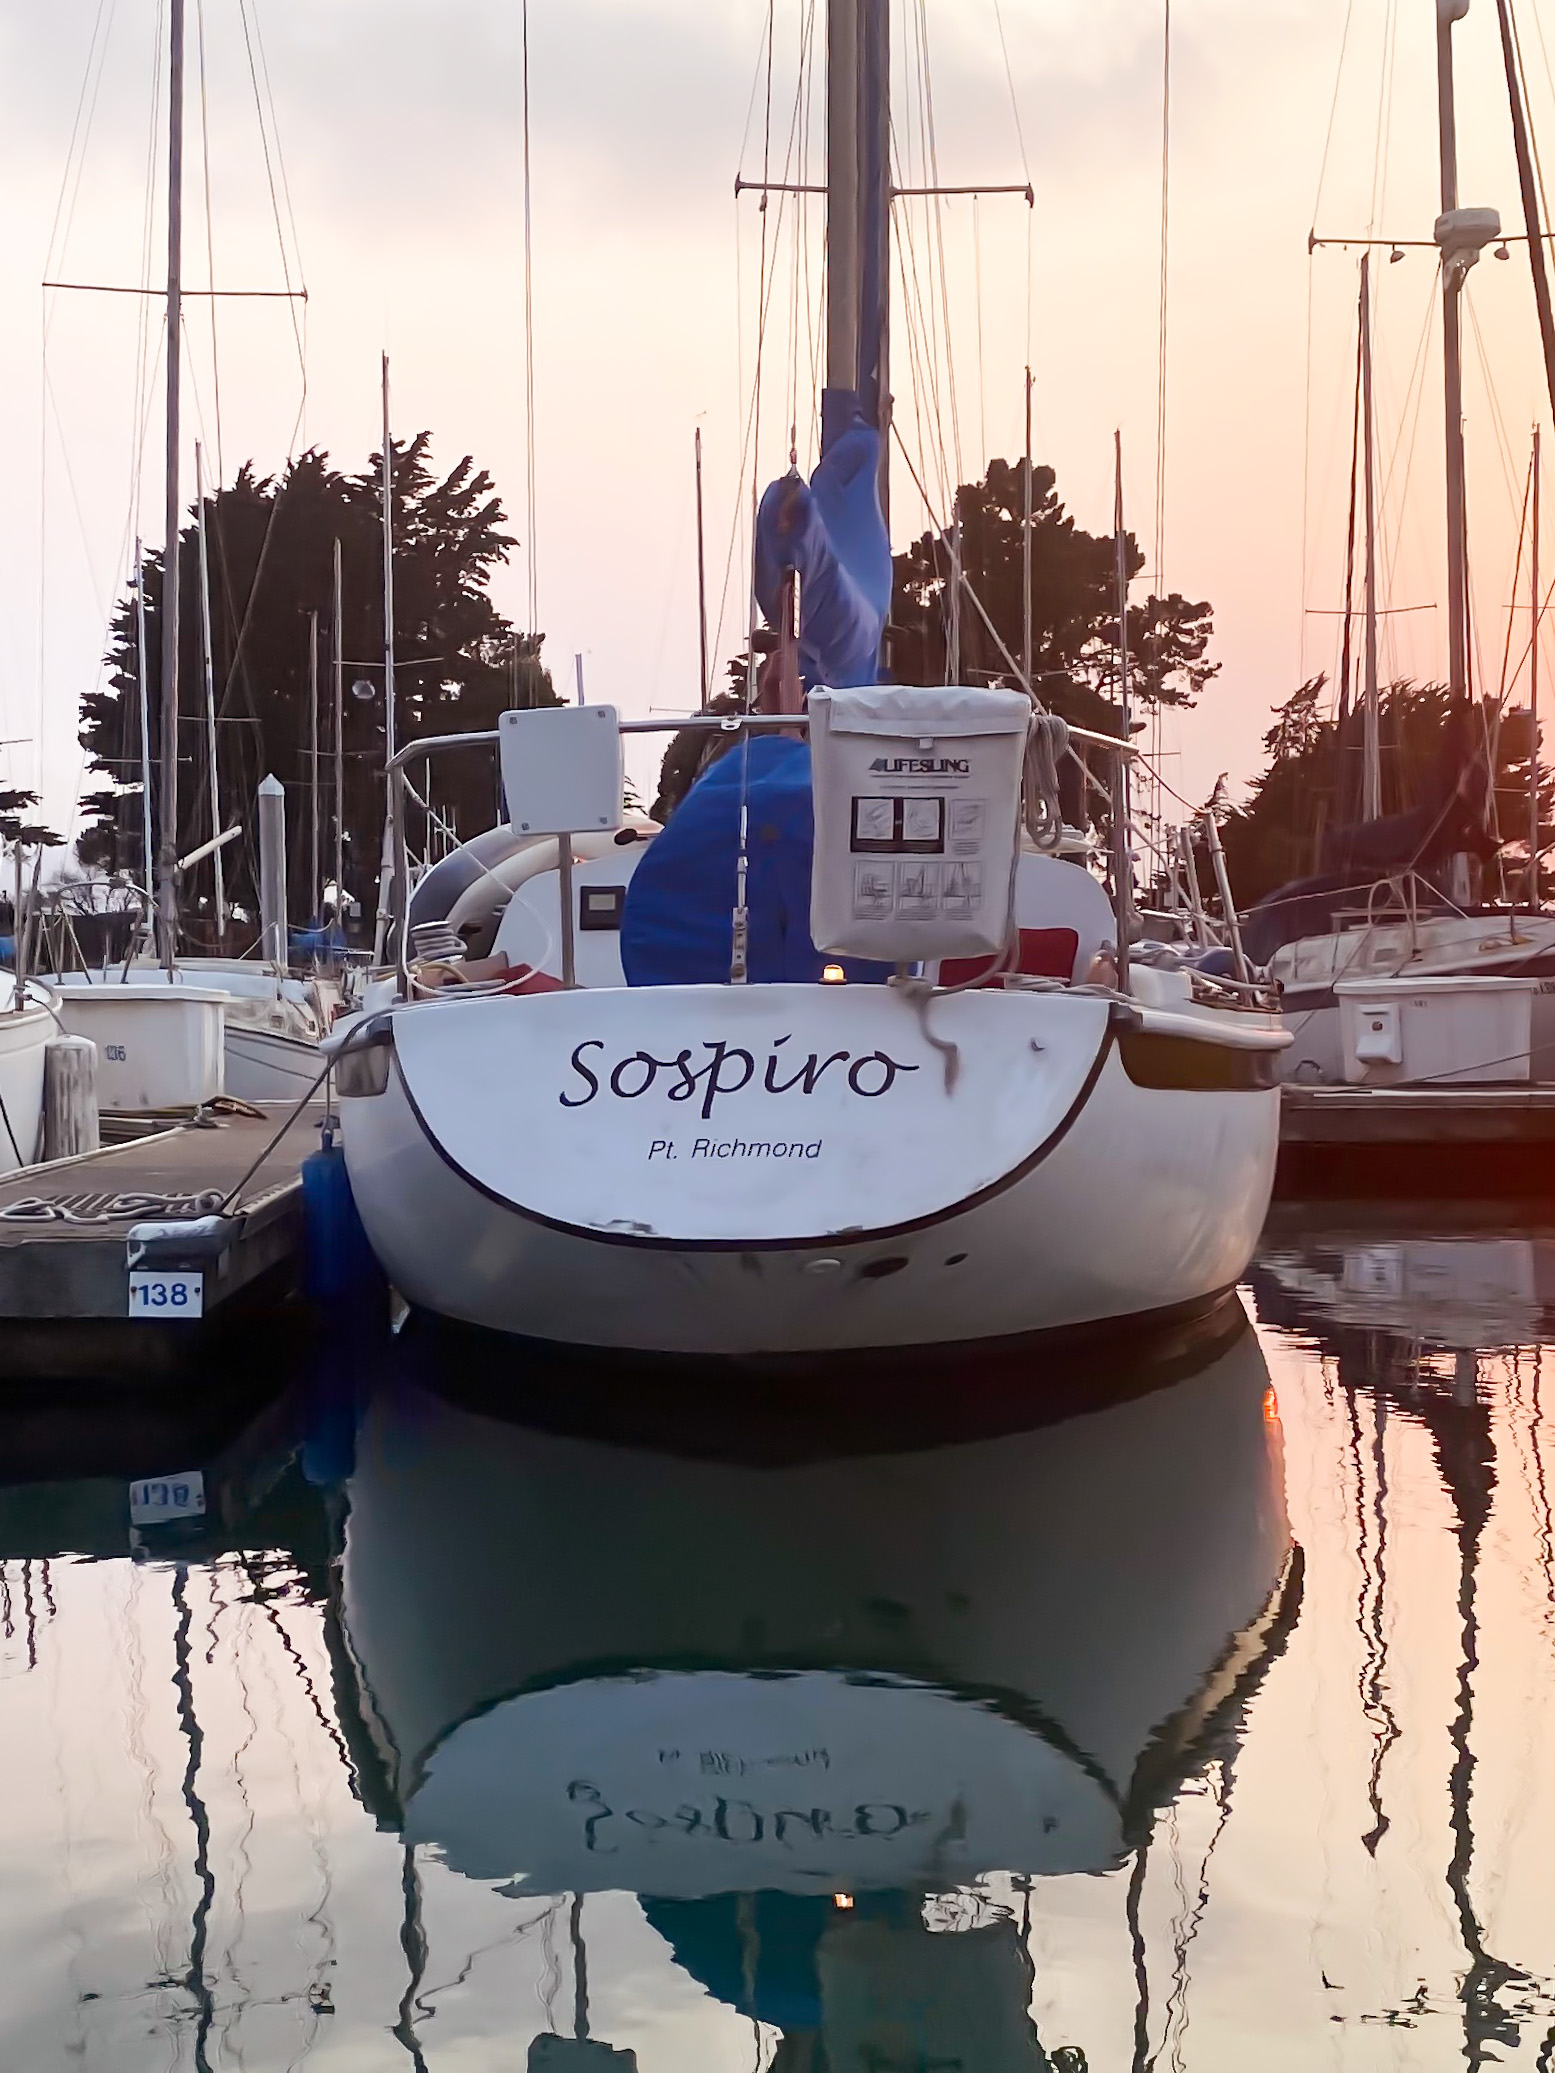 Sospiro at the dock